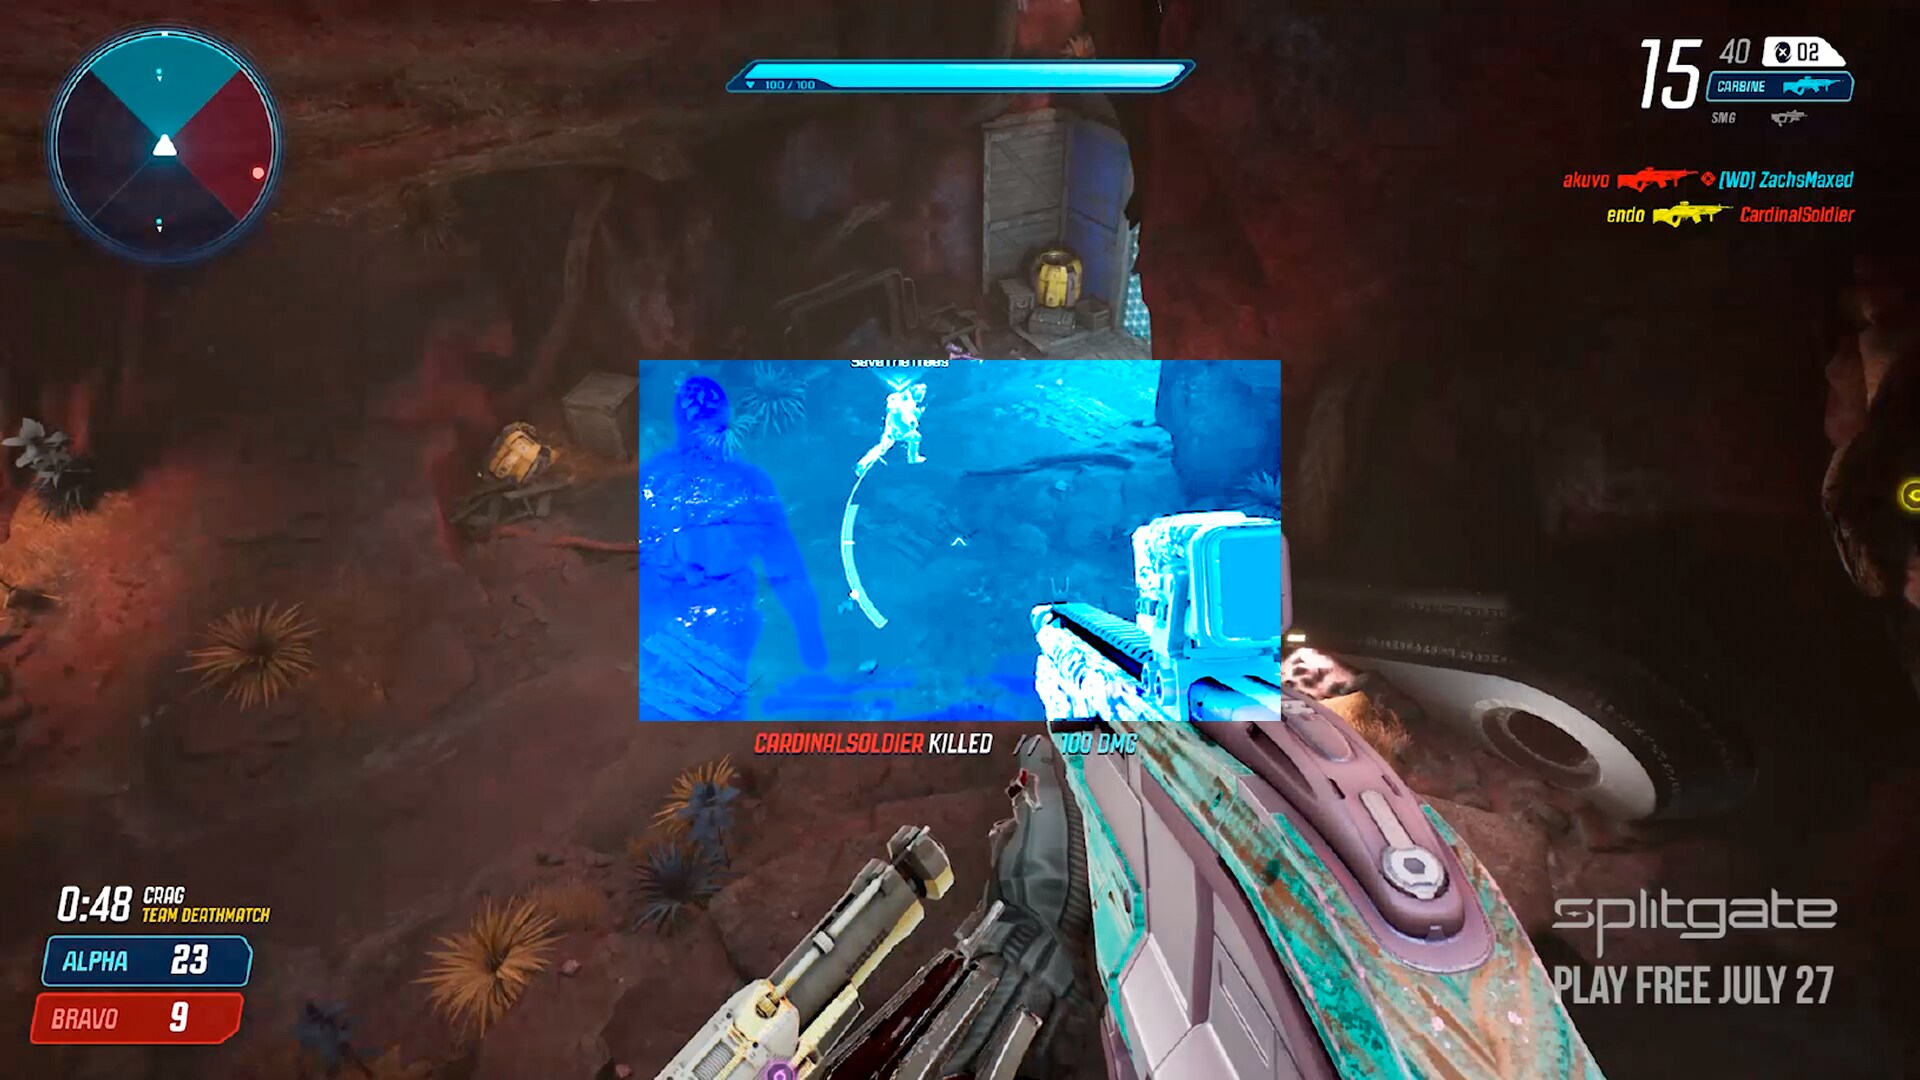 Capture d’écran du jeu vidéo Spitgame